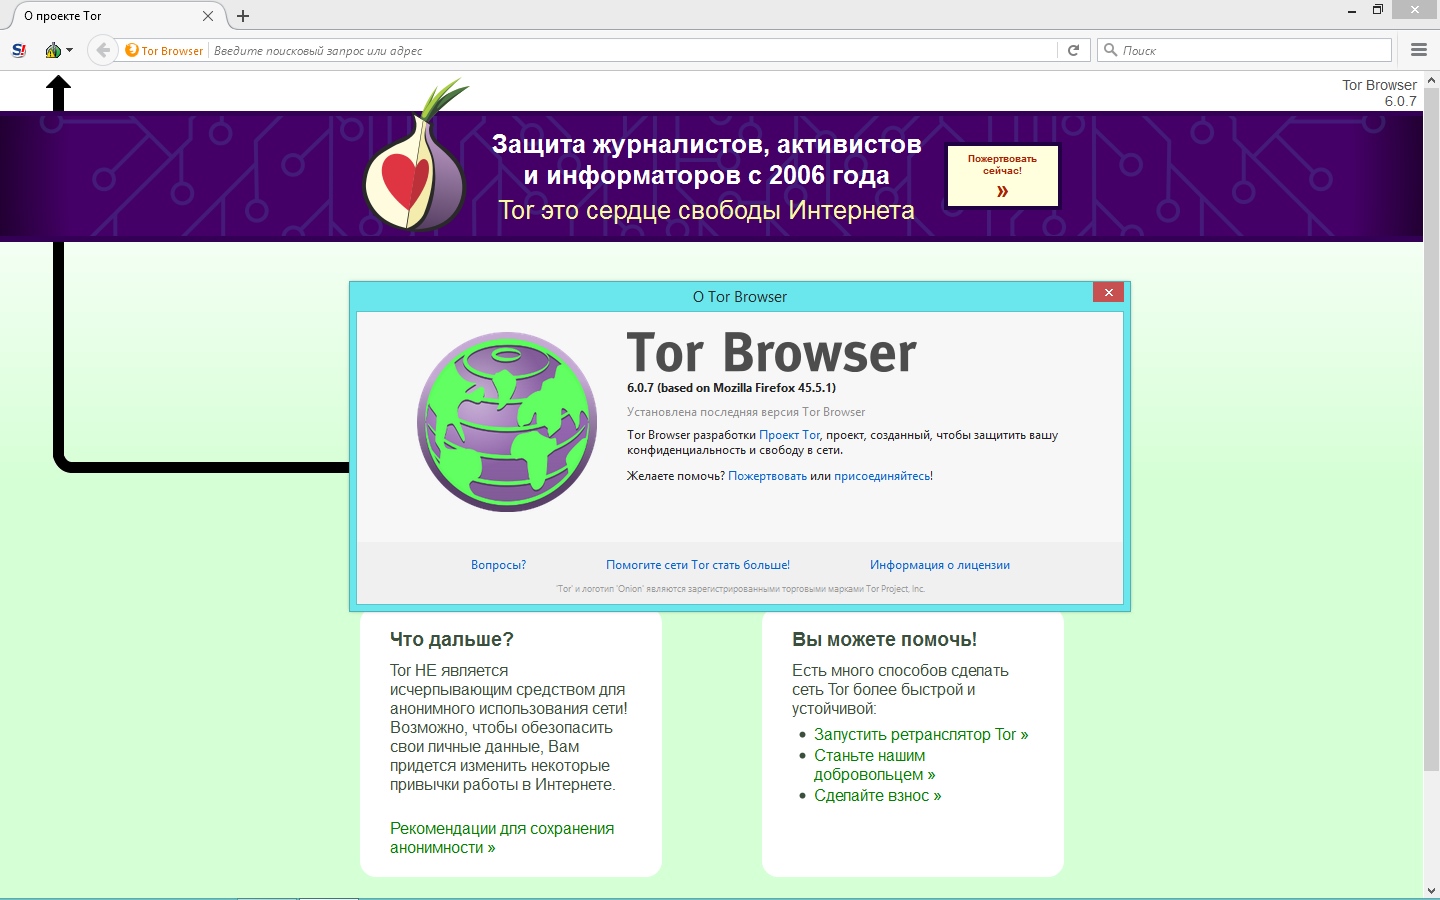 Скачать тор браузер бесплатно на русском языке через торрент mega стоит ли устанавливать тор браузер mega